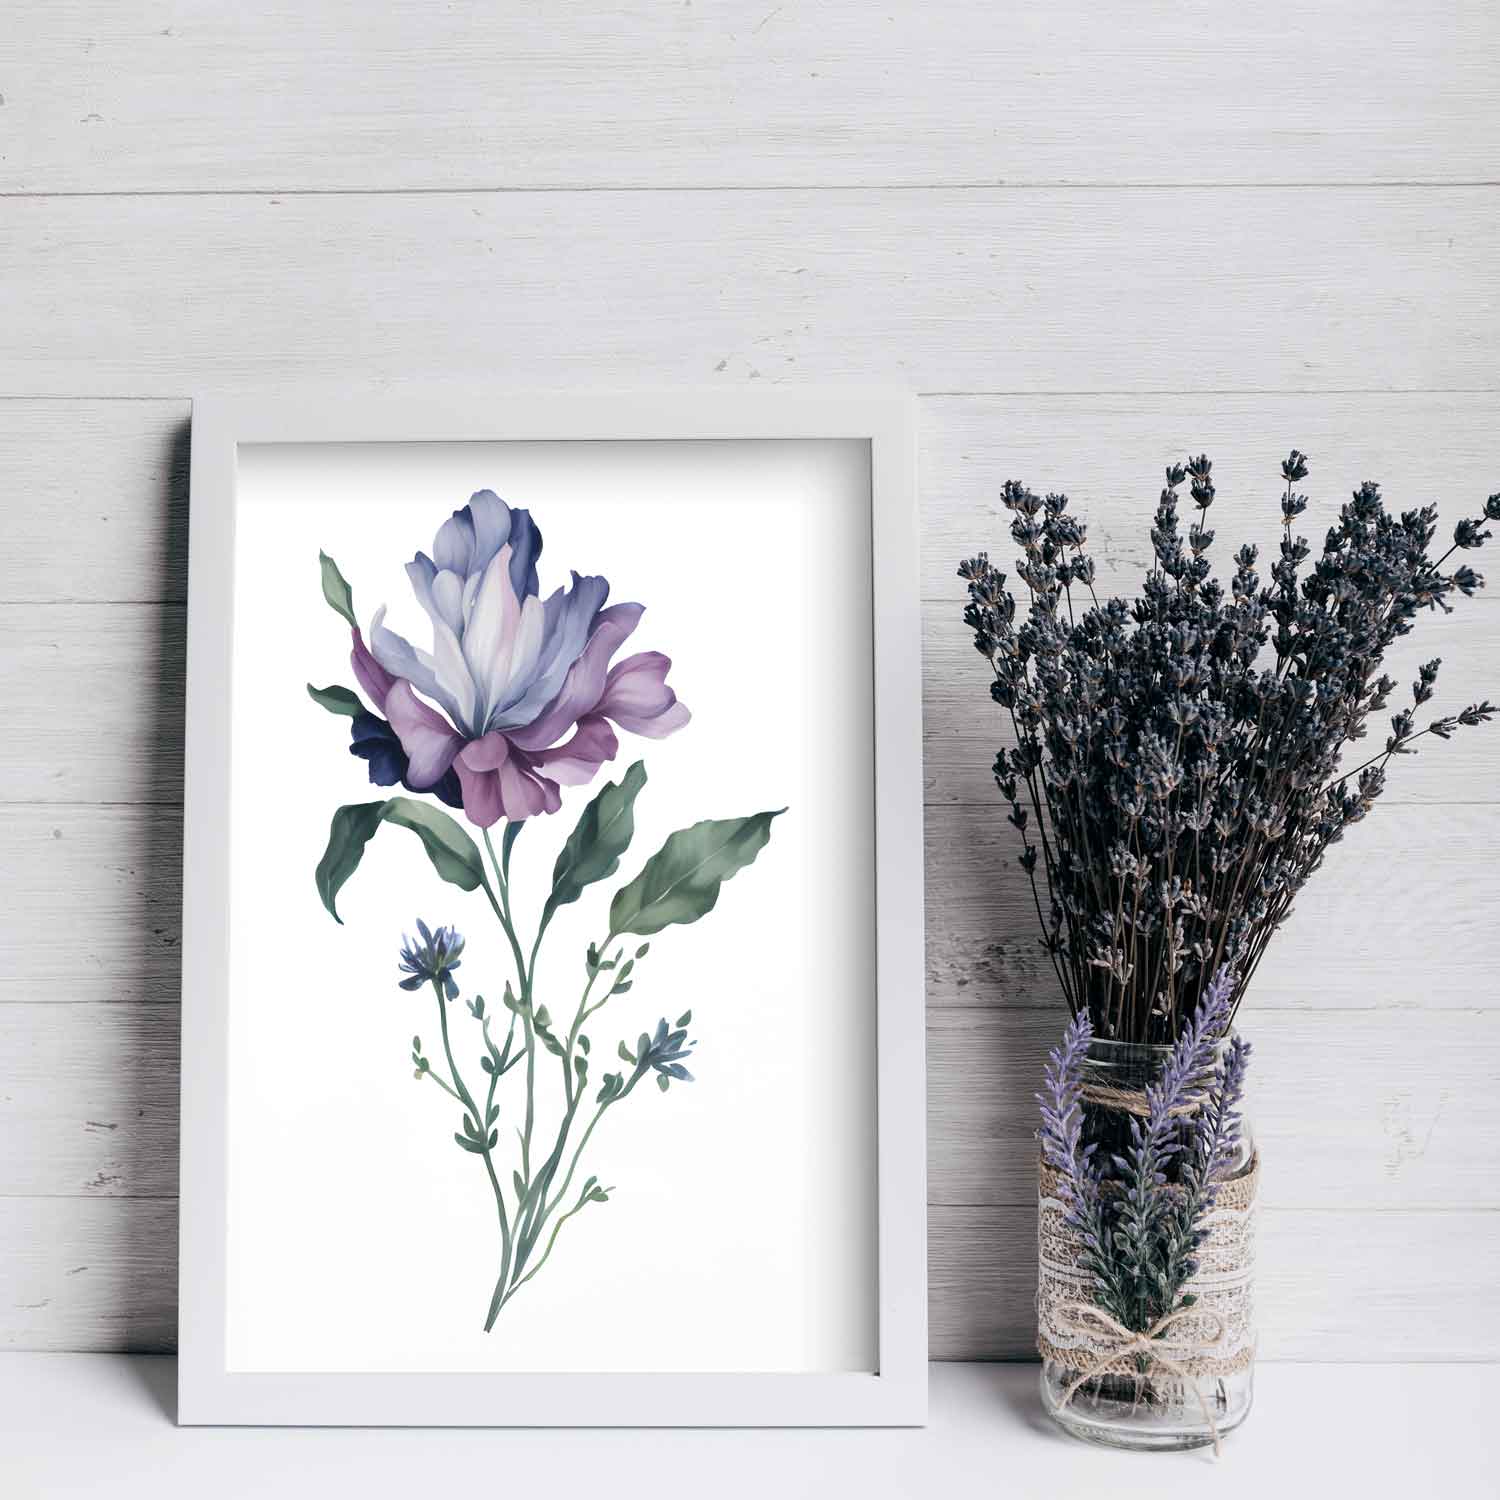 Lavender Fields - Digital Wall Art Set Of 3